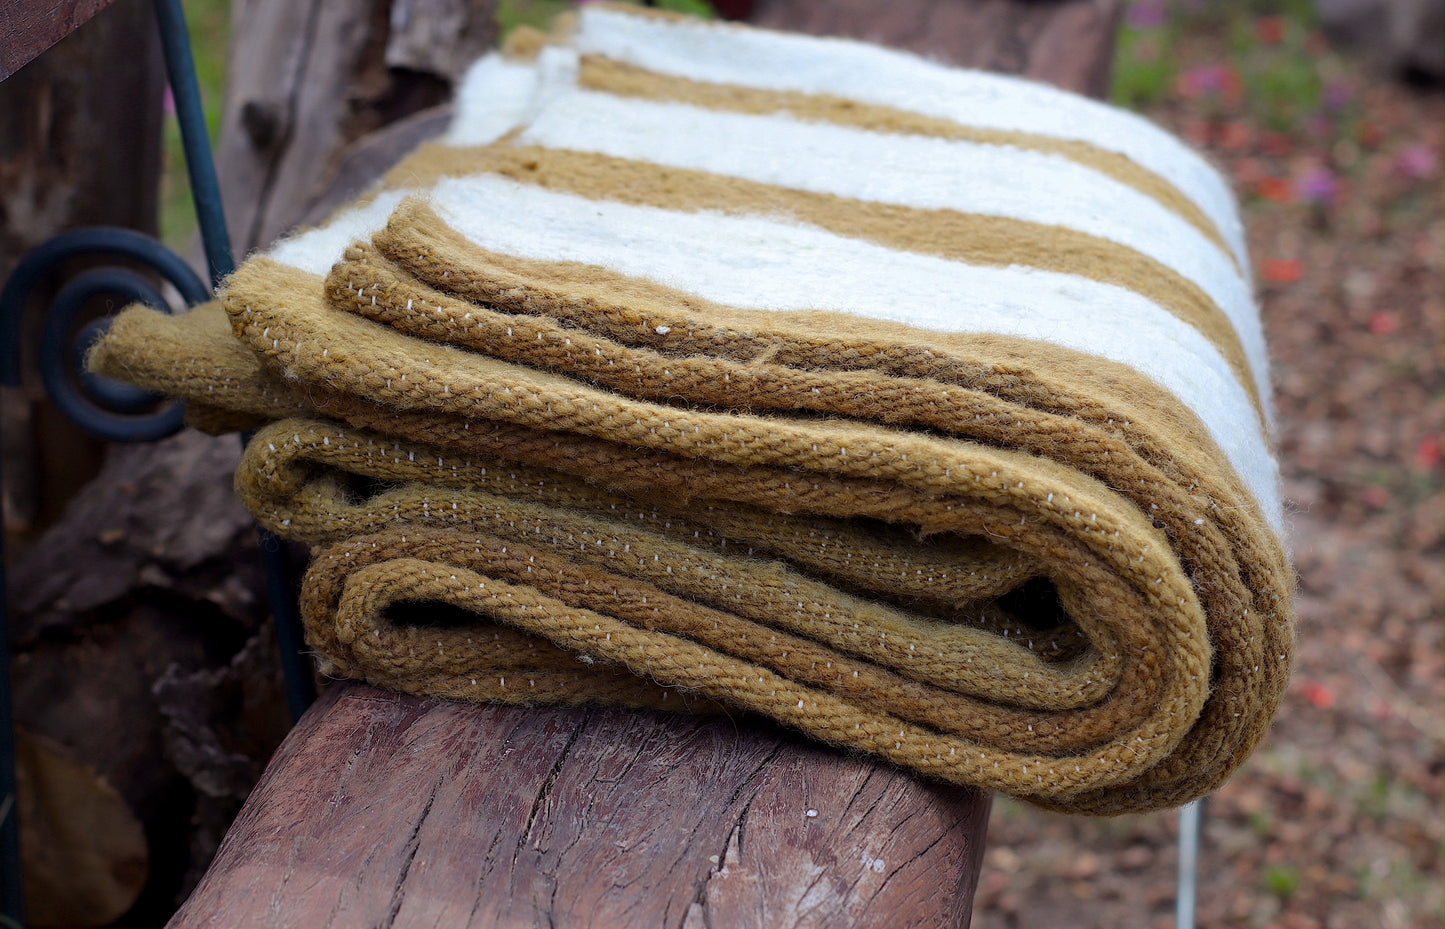 Sheep Wool Rug Made on Loom